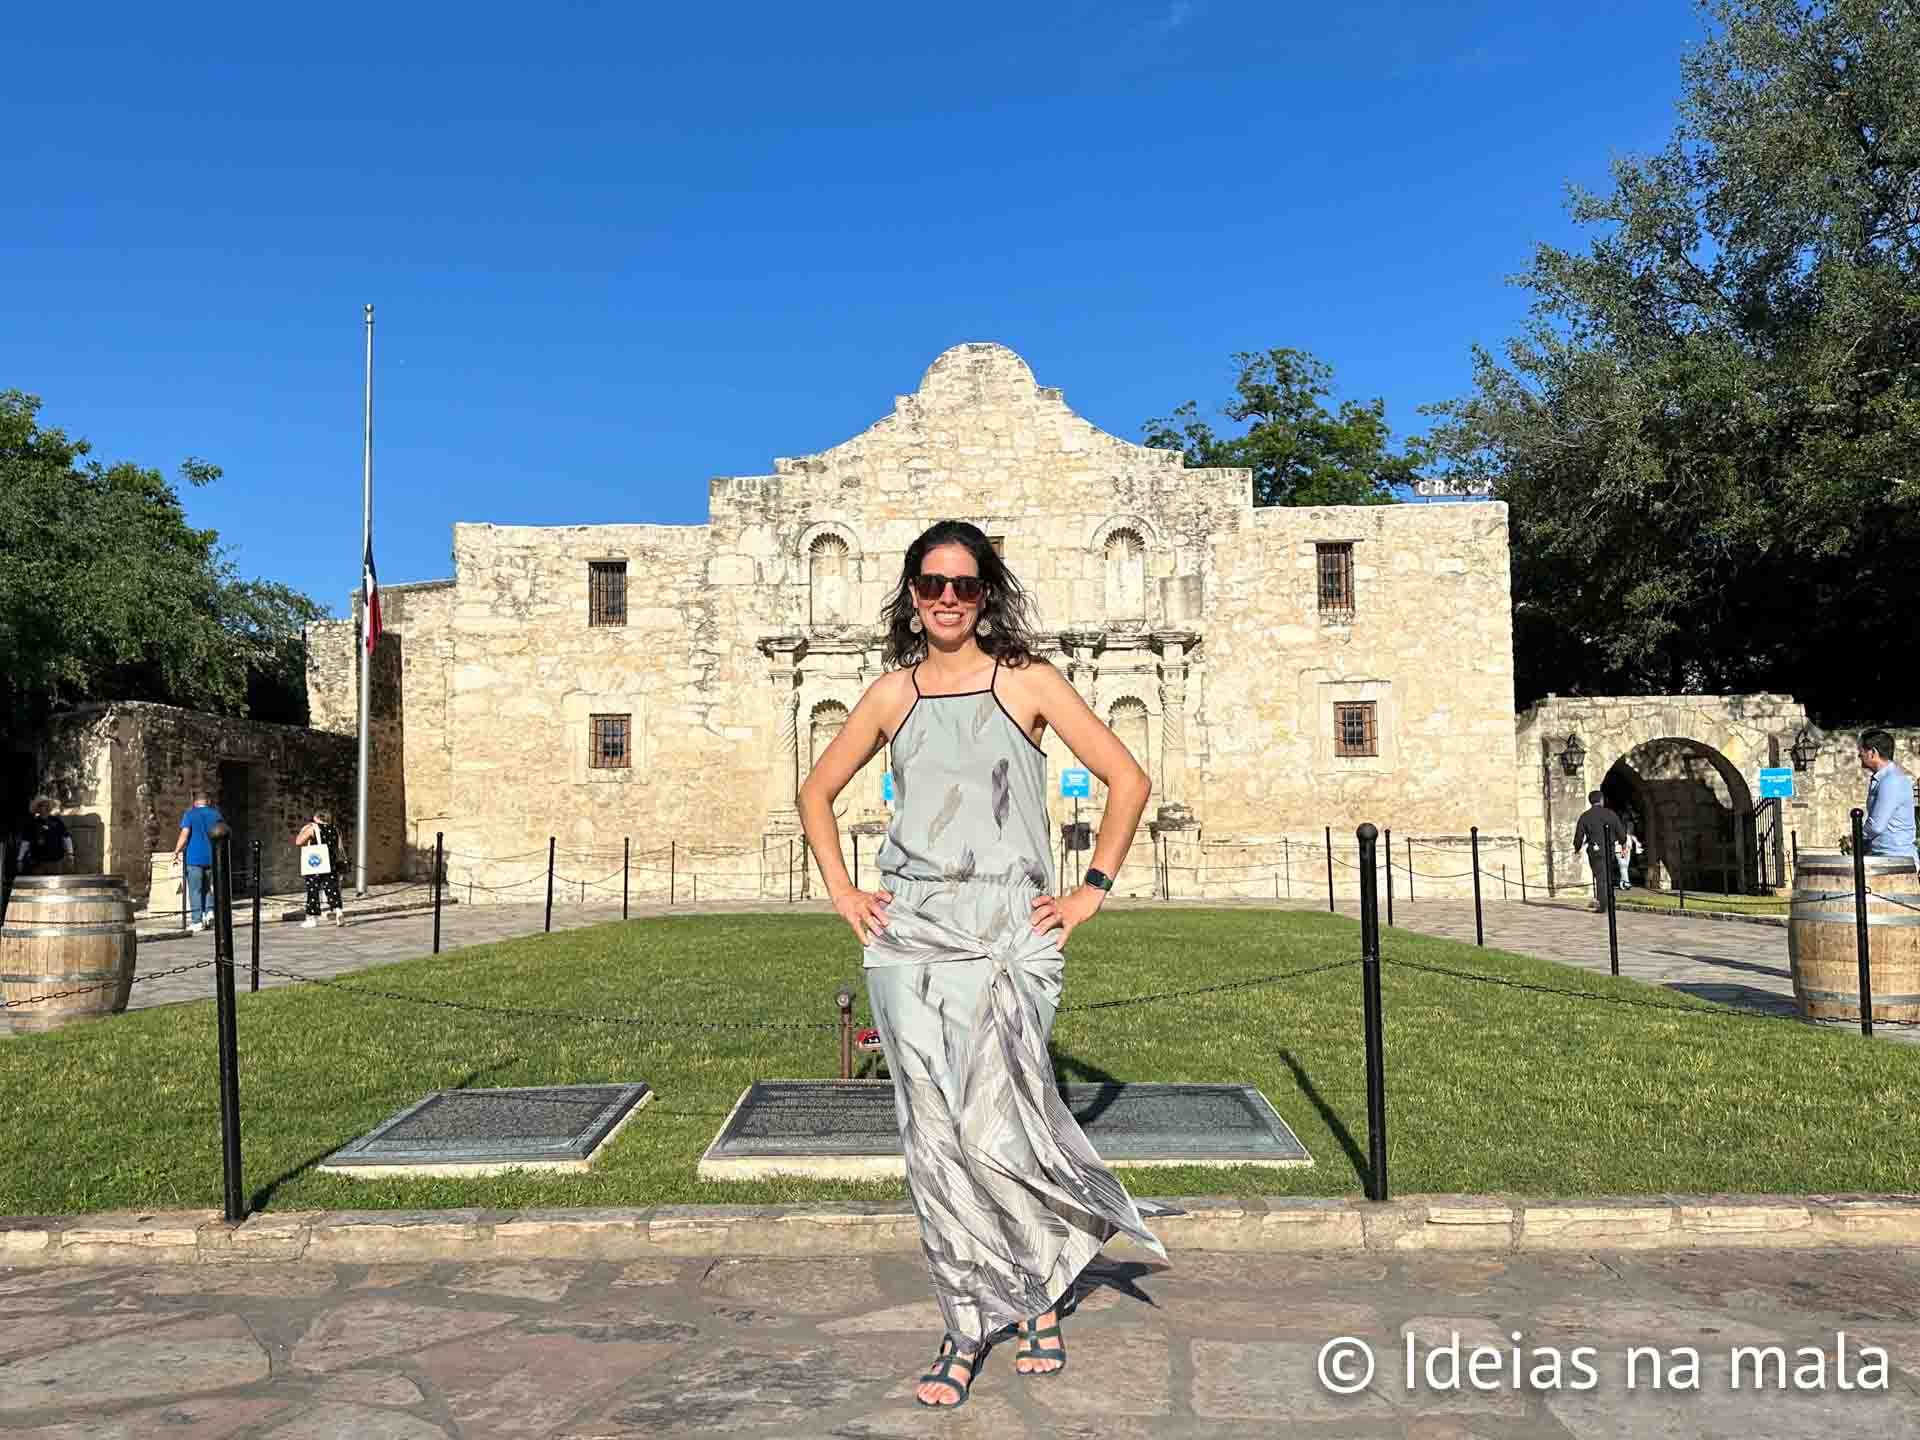 The Alamo, a principal atração turística de San Antonio